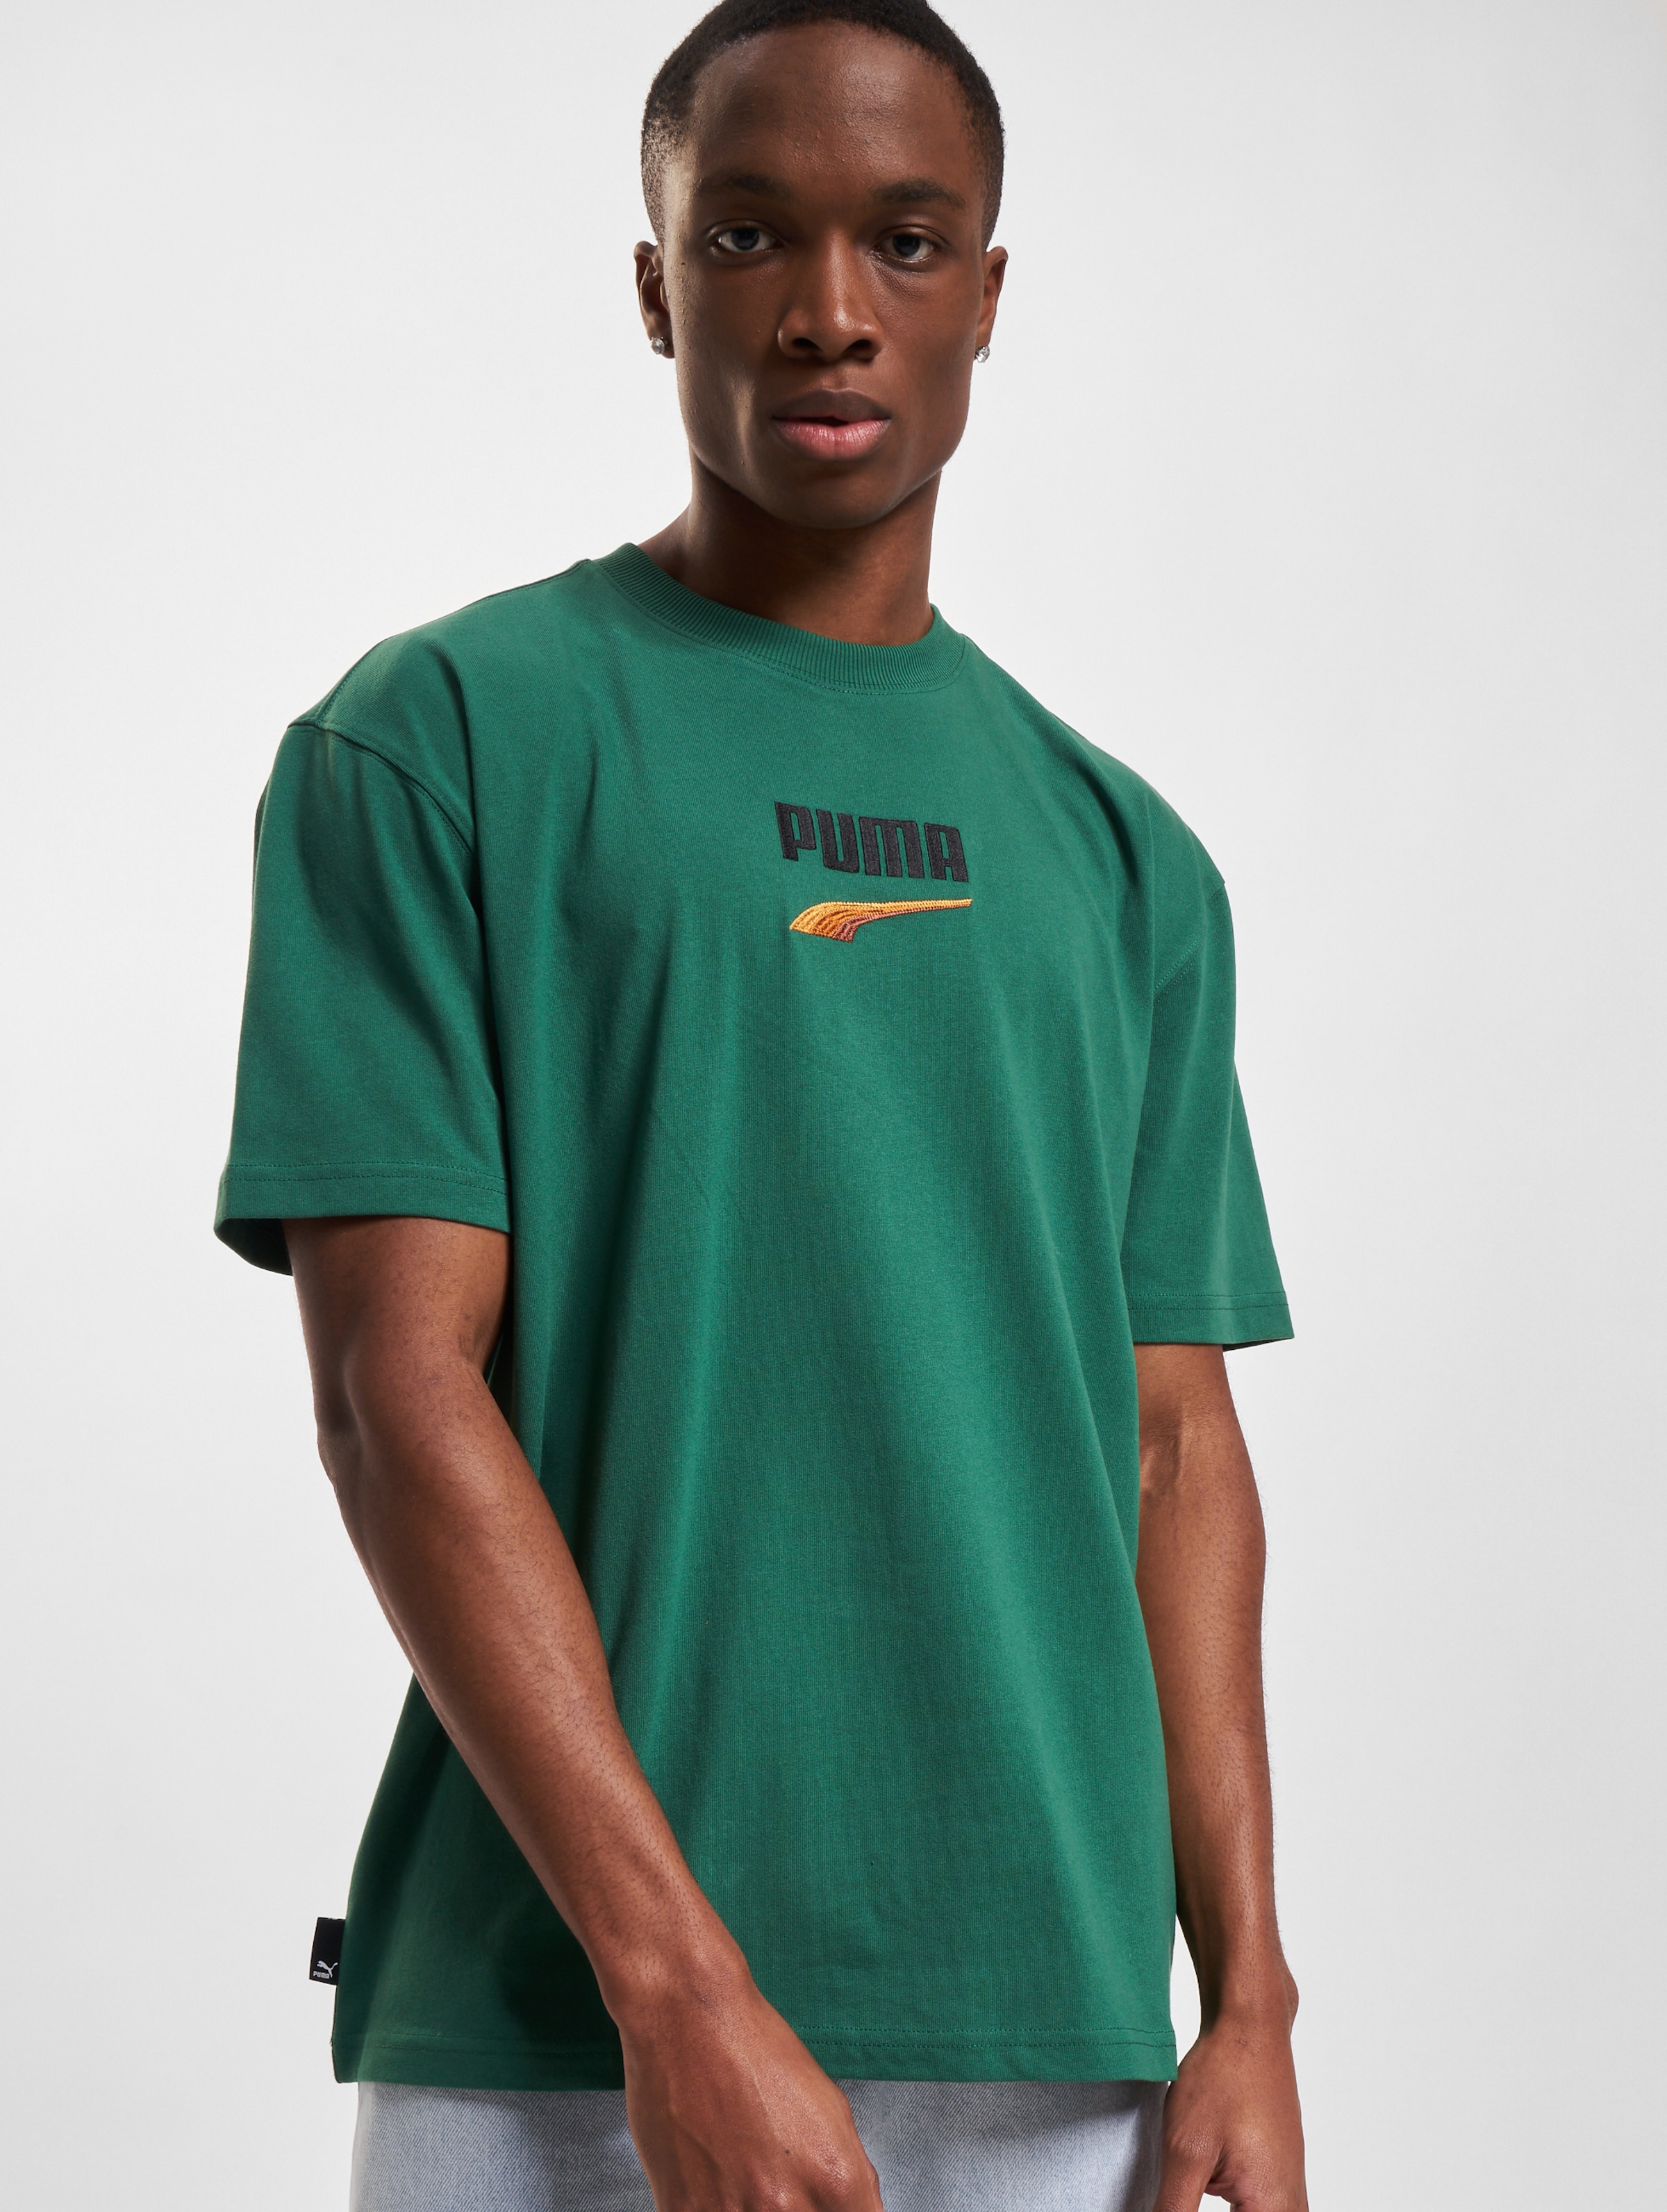 Puma T-Shirt Mannen op kleur groen, Maat M